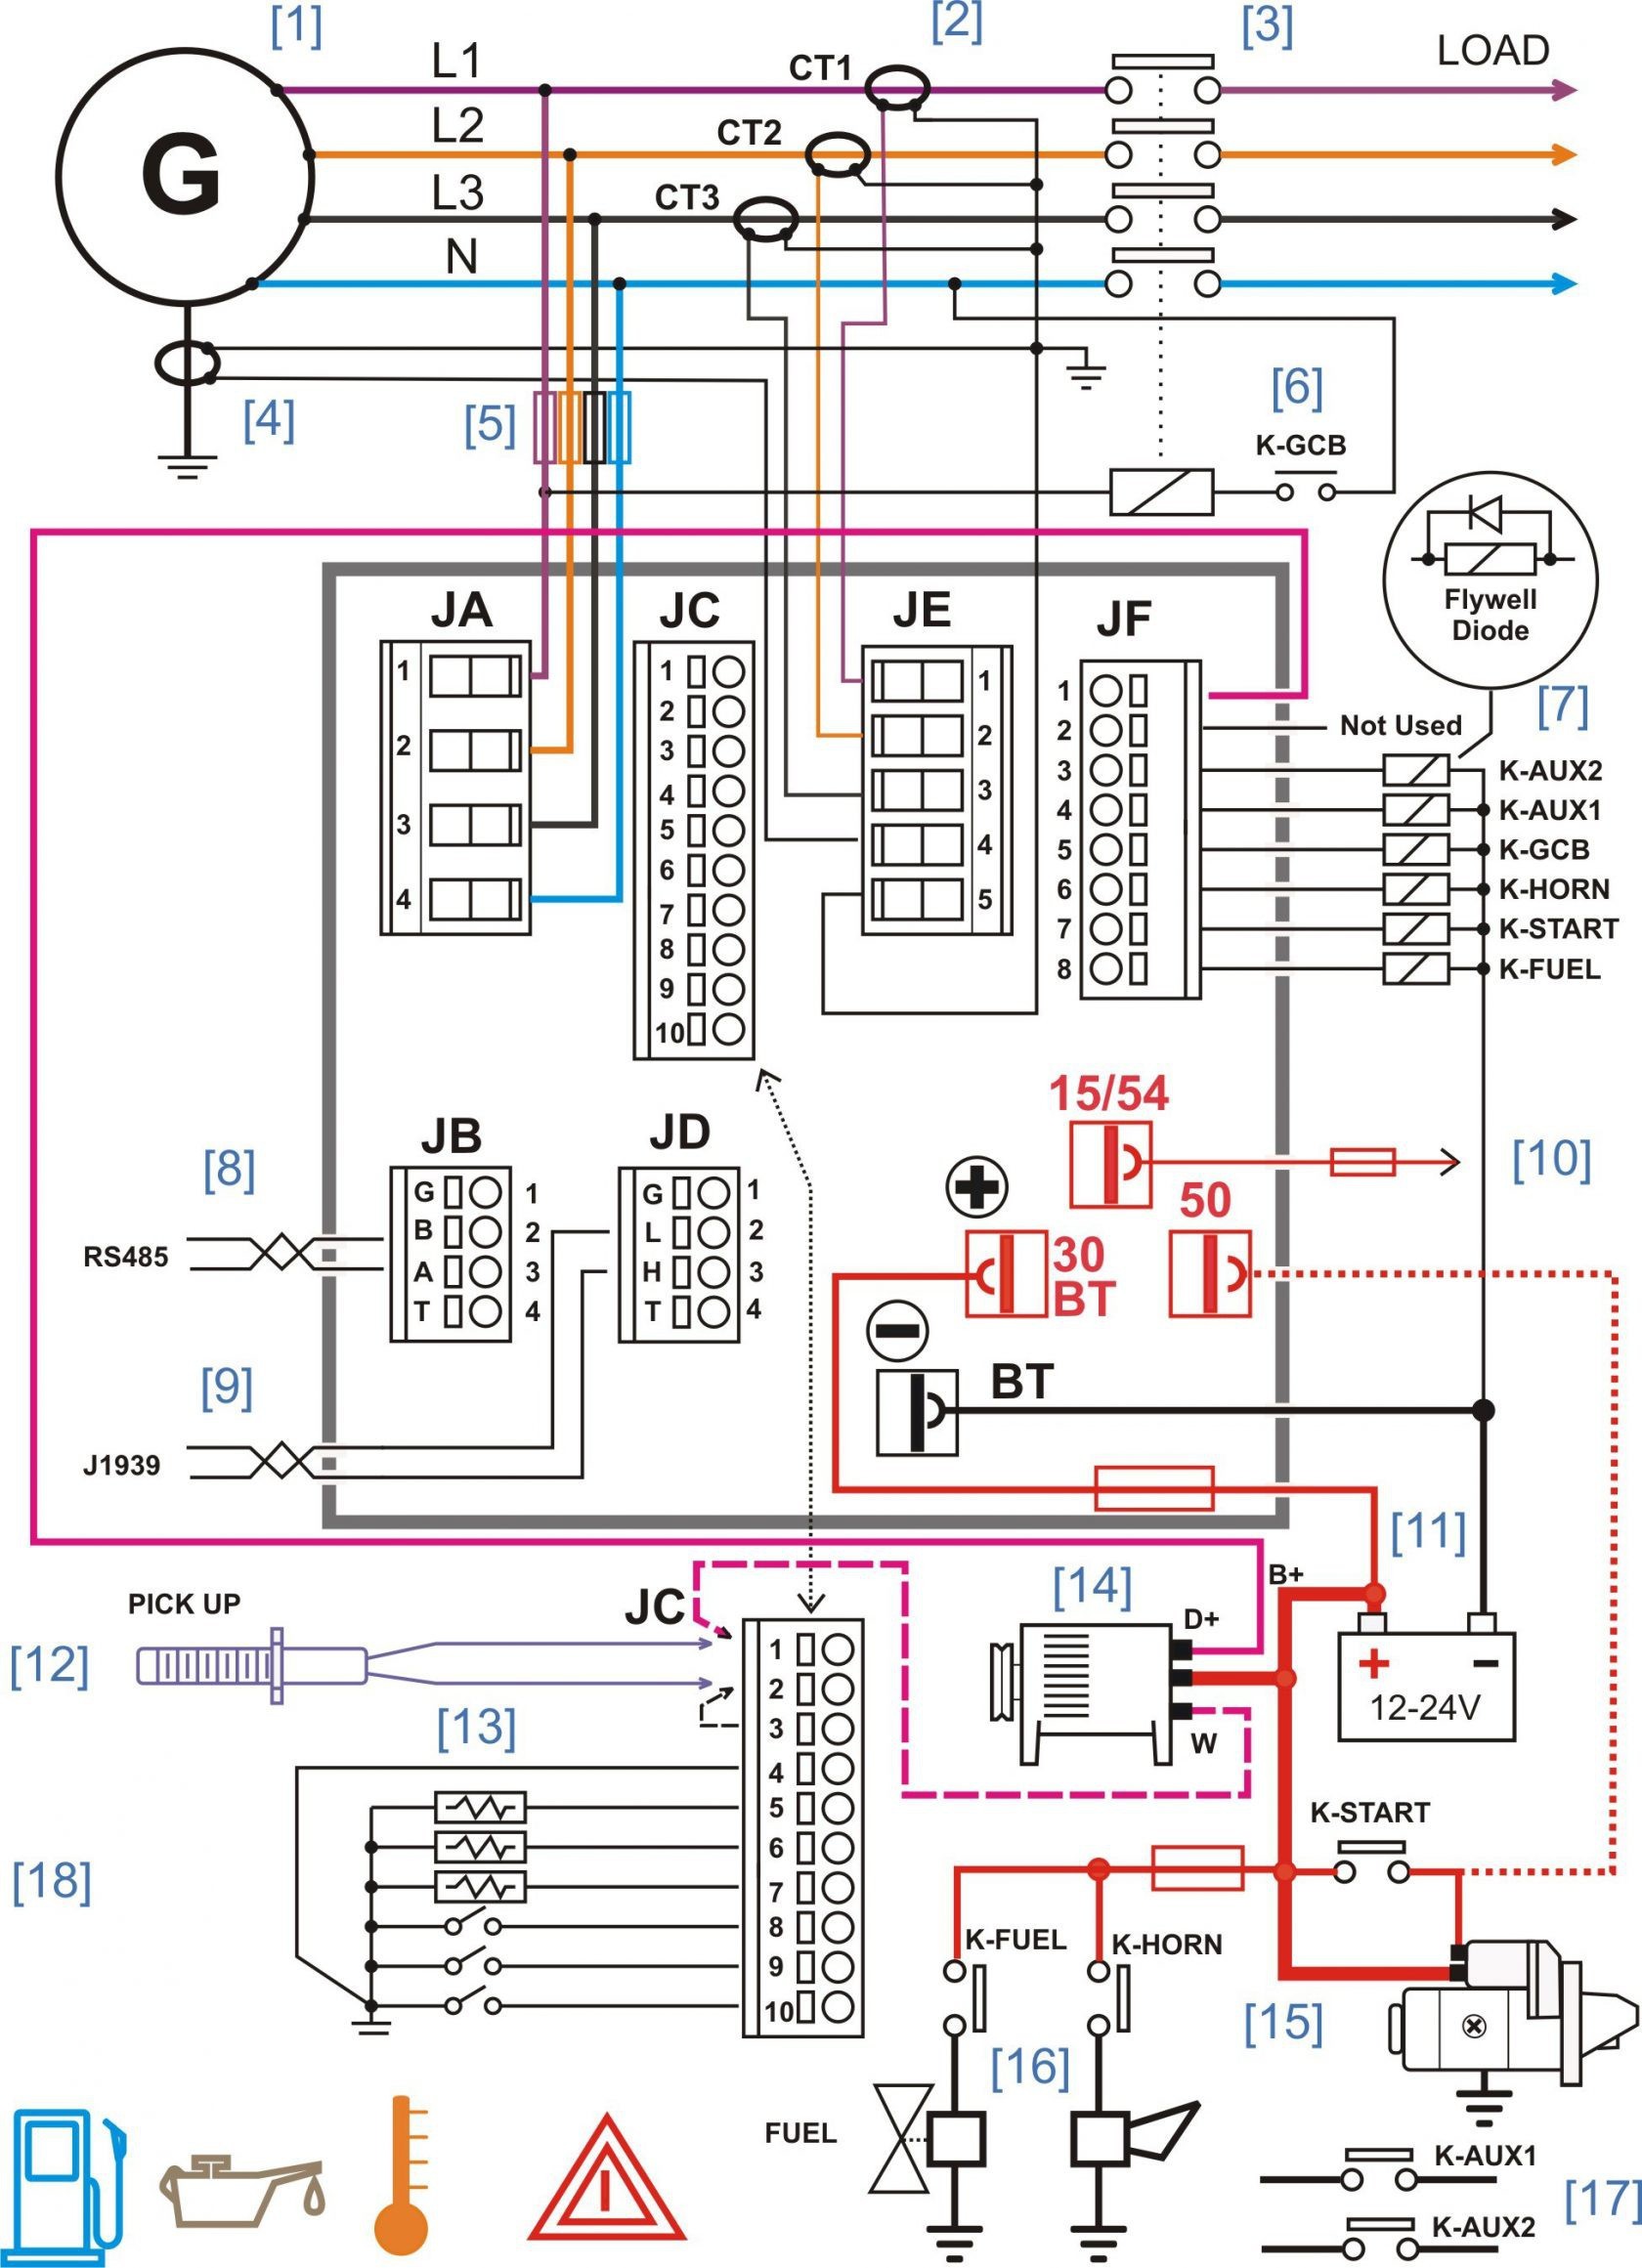 Autozone Wiring Diagram Best Autozone Wiring Diagrams Best Wiring Diagram Delco Radio Model